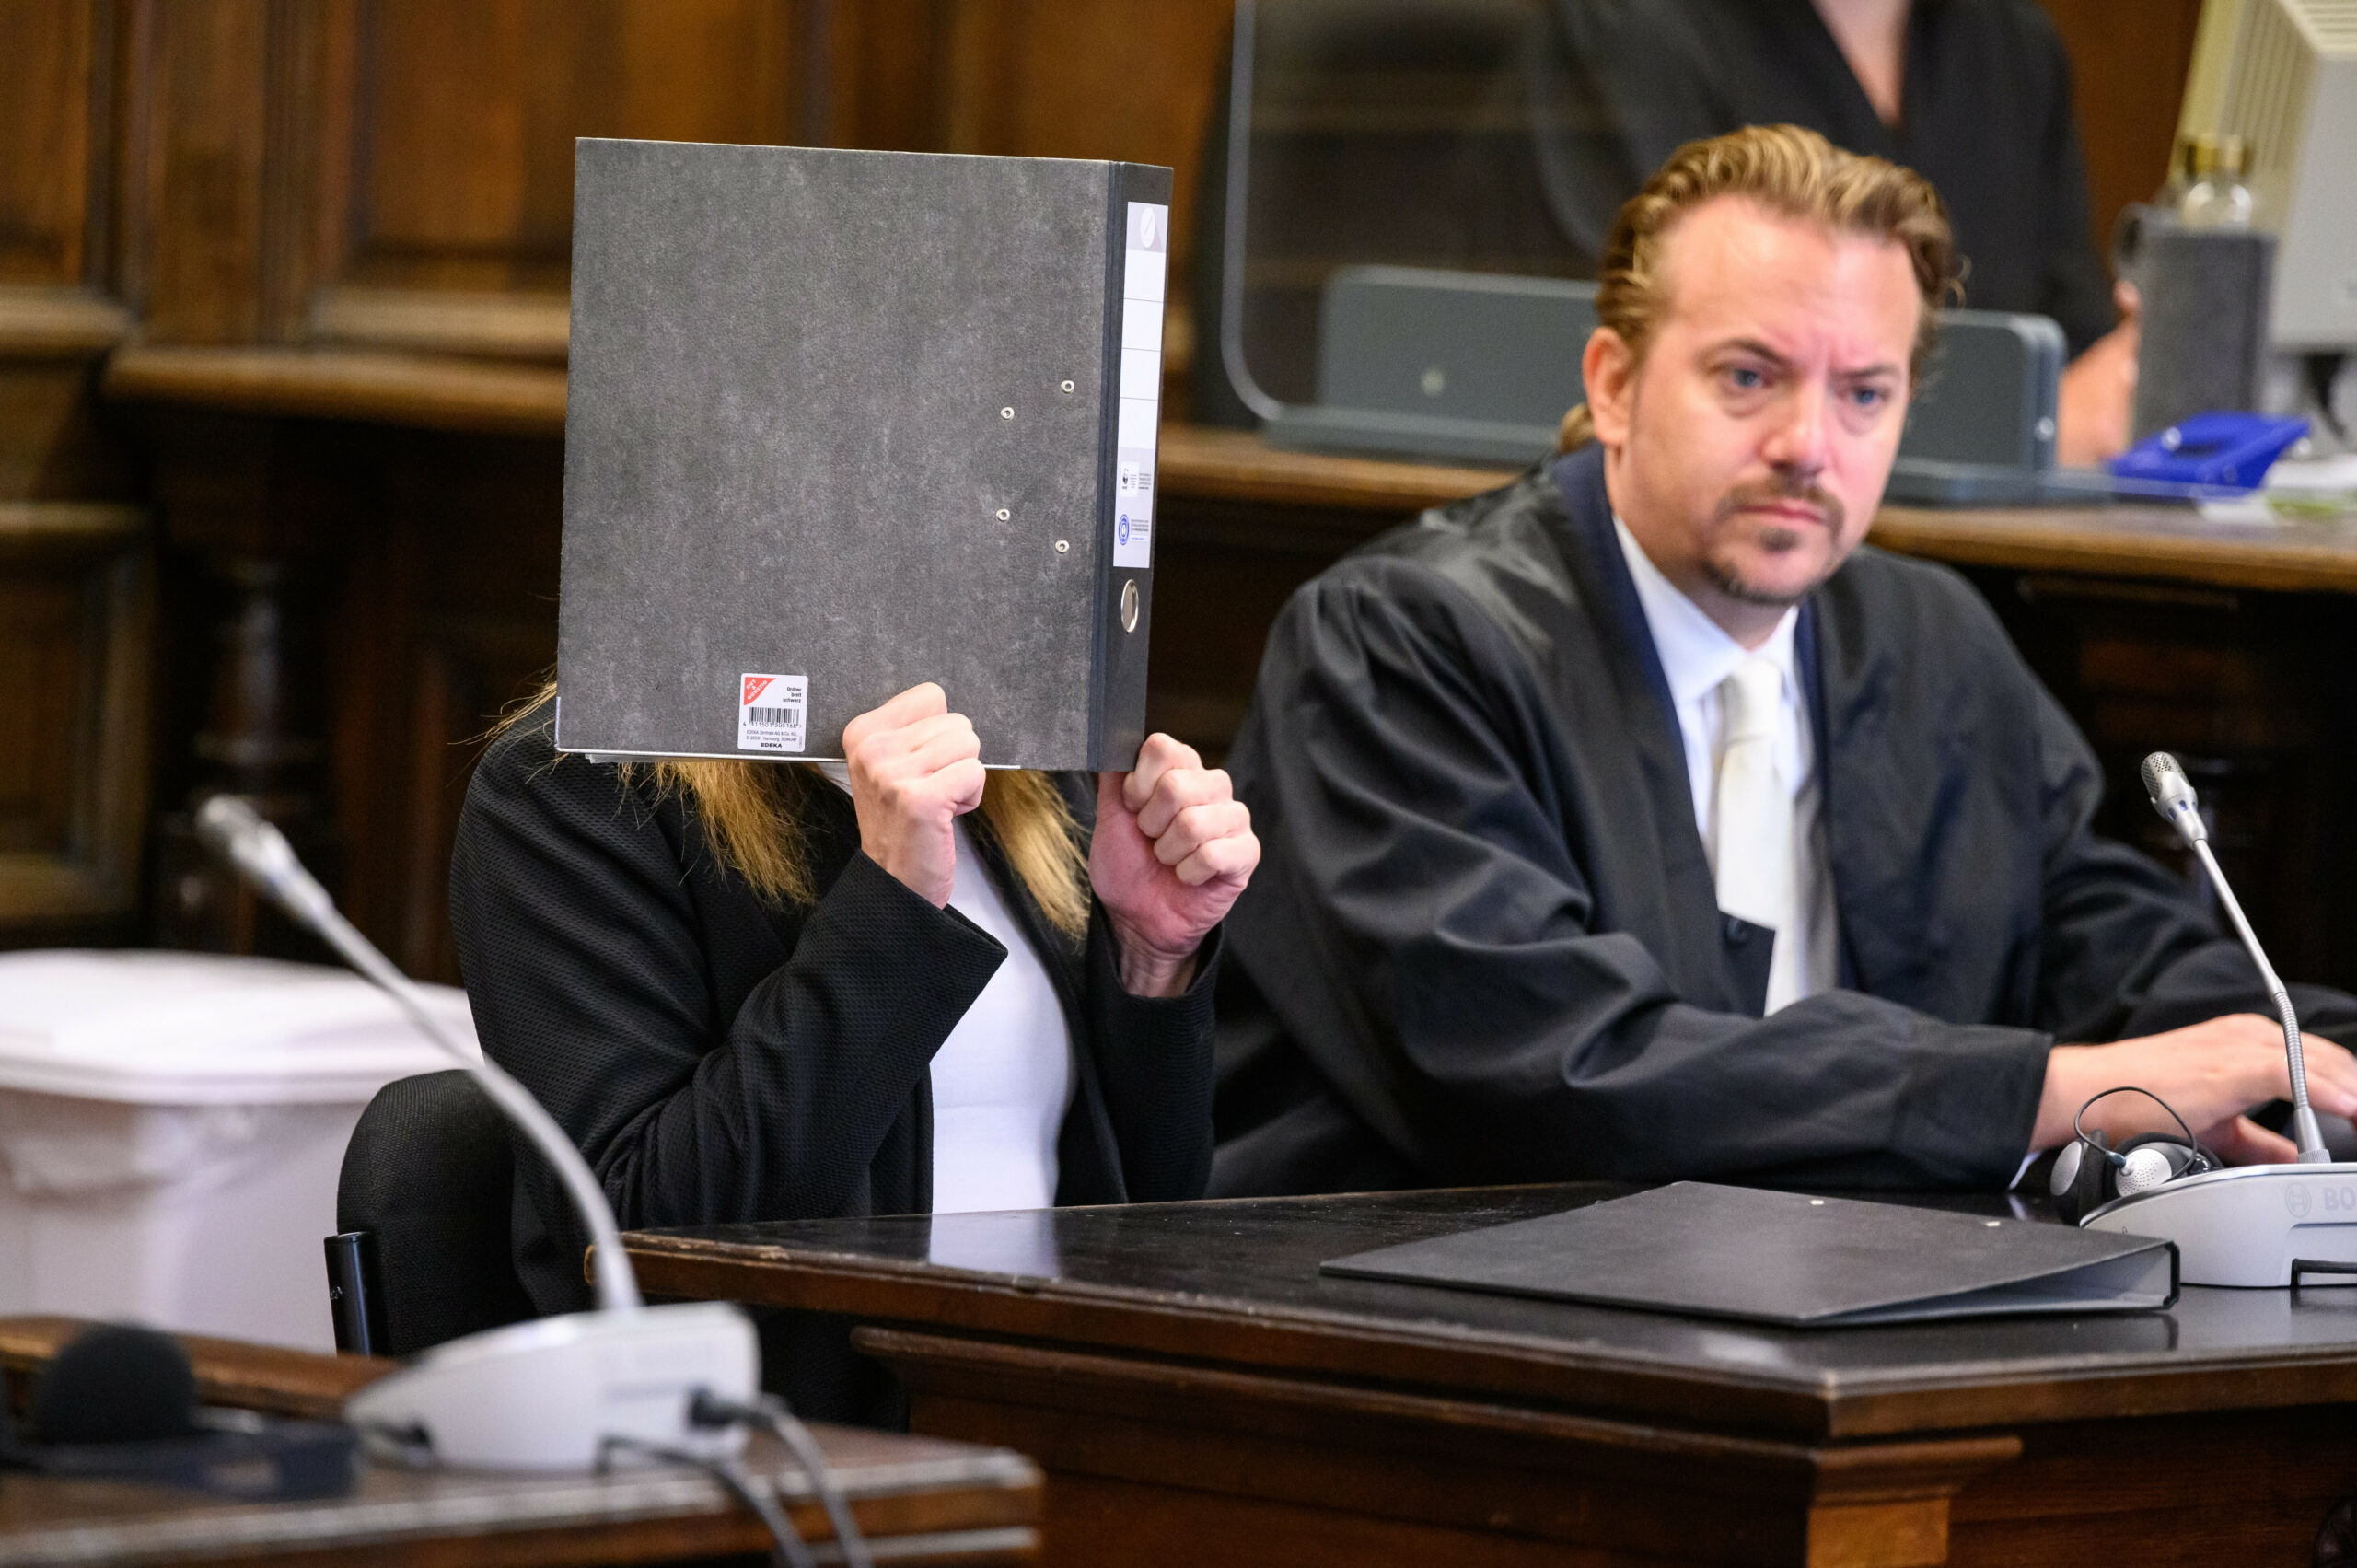 Die Angeklagte (l.) sitzt vor Beginn der Verhandlung im Gerichtssaal neben ihrem Verteidiger Dennis Grünert und verdeckt ihr Gesicht mit einem Aktenordner.